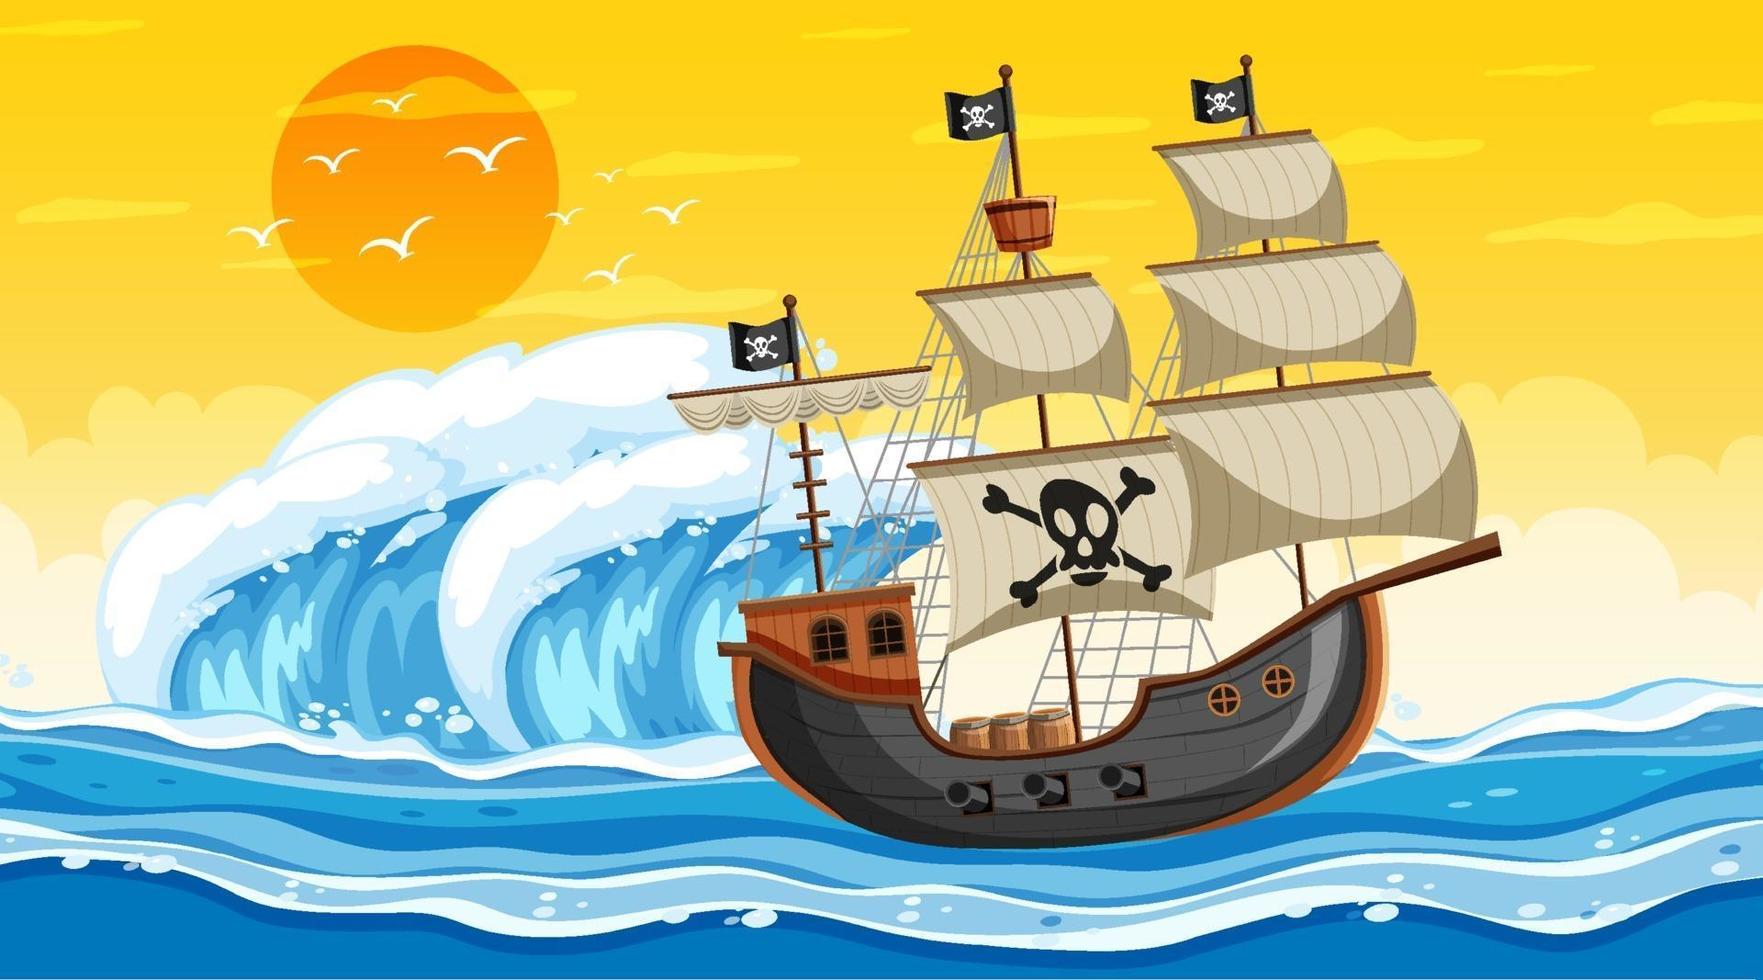 scena dell'oceano al tramonto con la nave pirata in stile cartone animato vettore